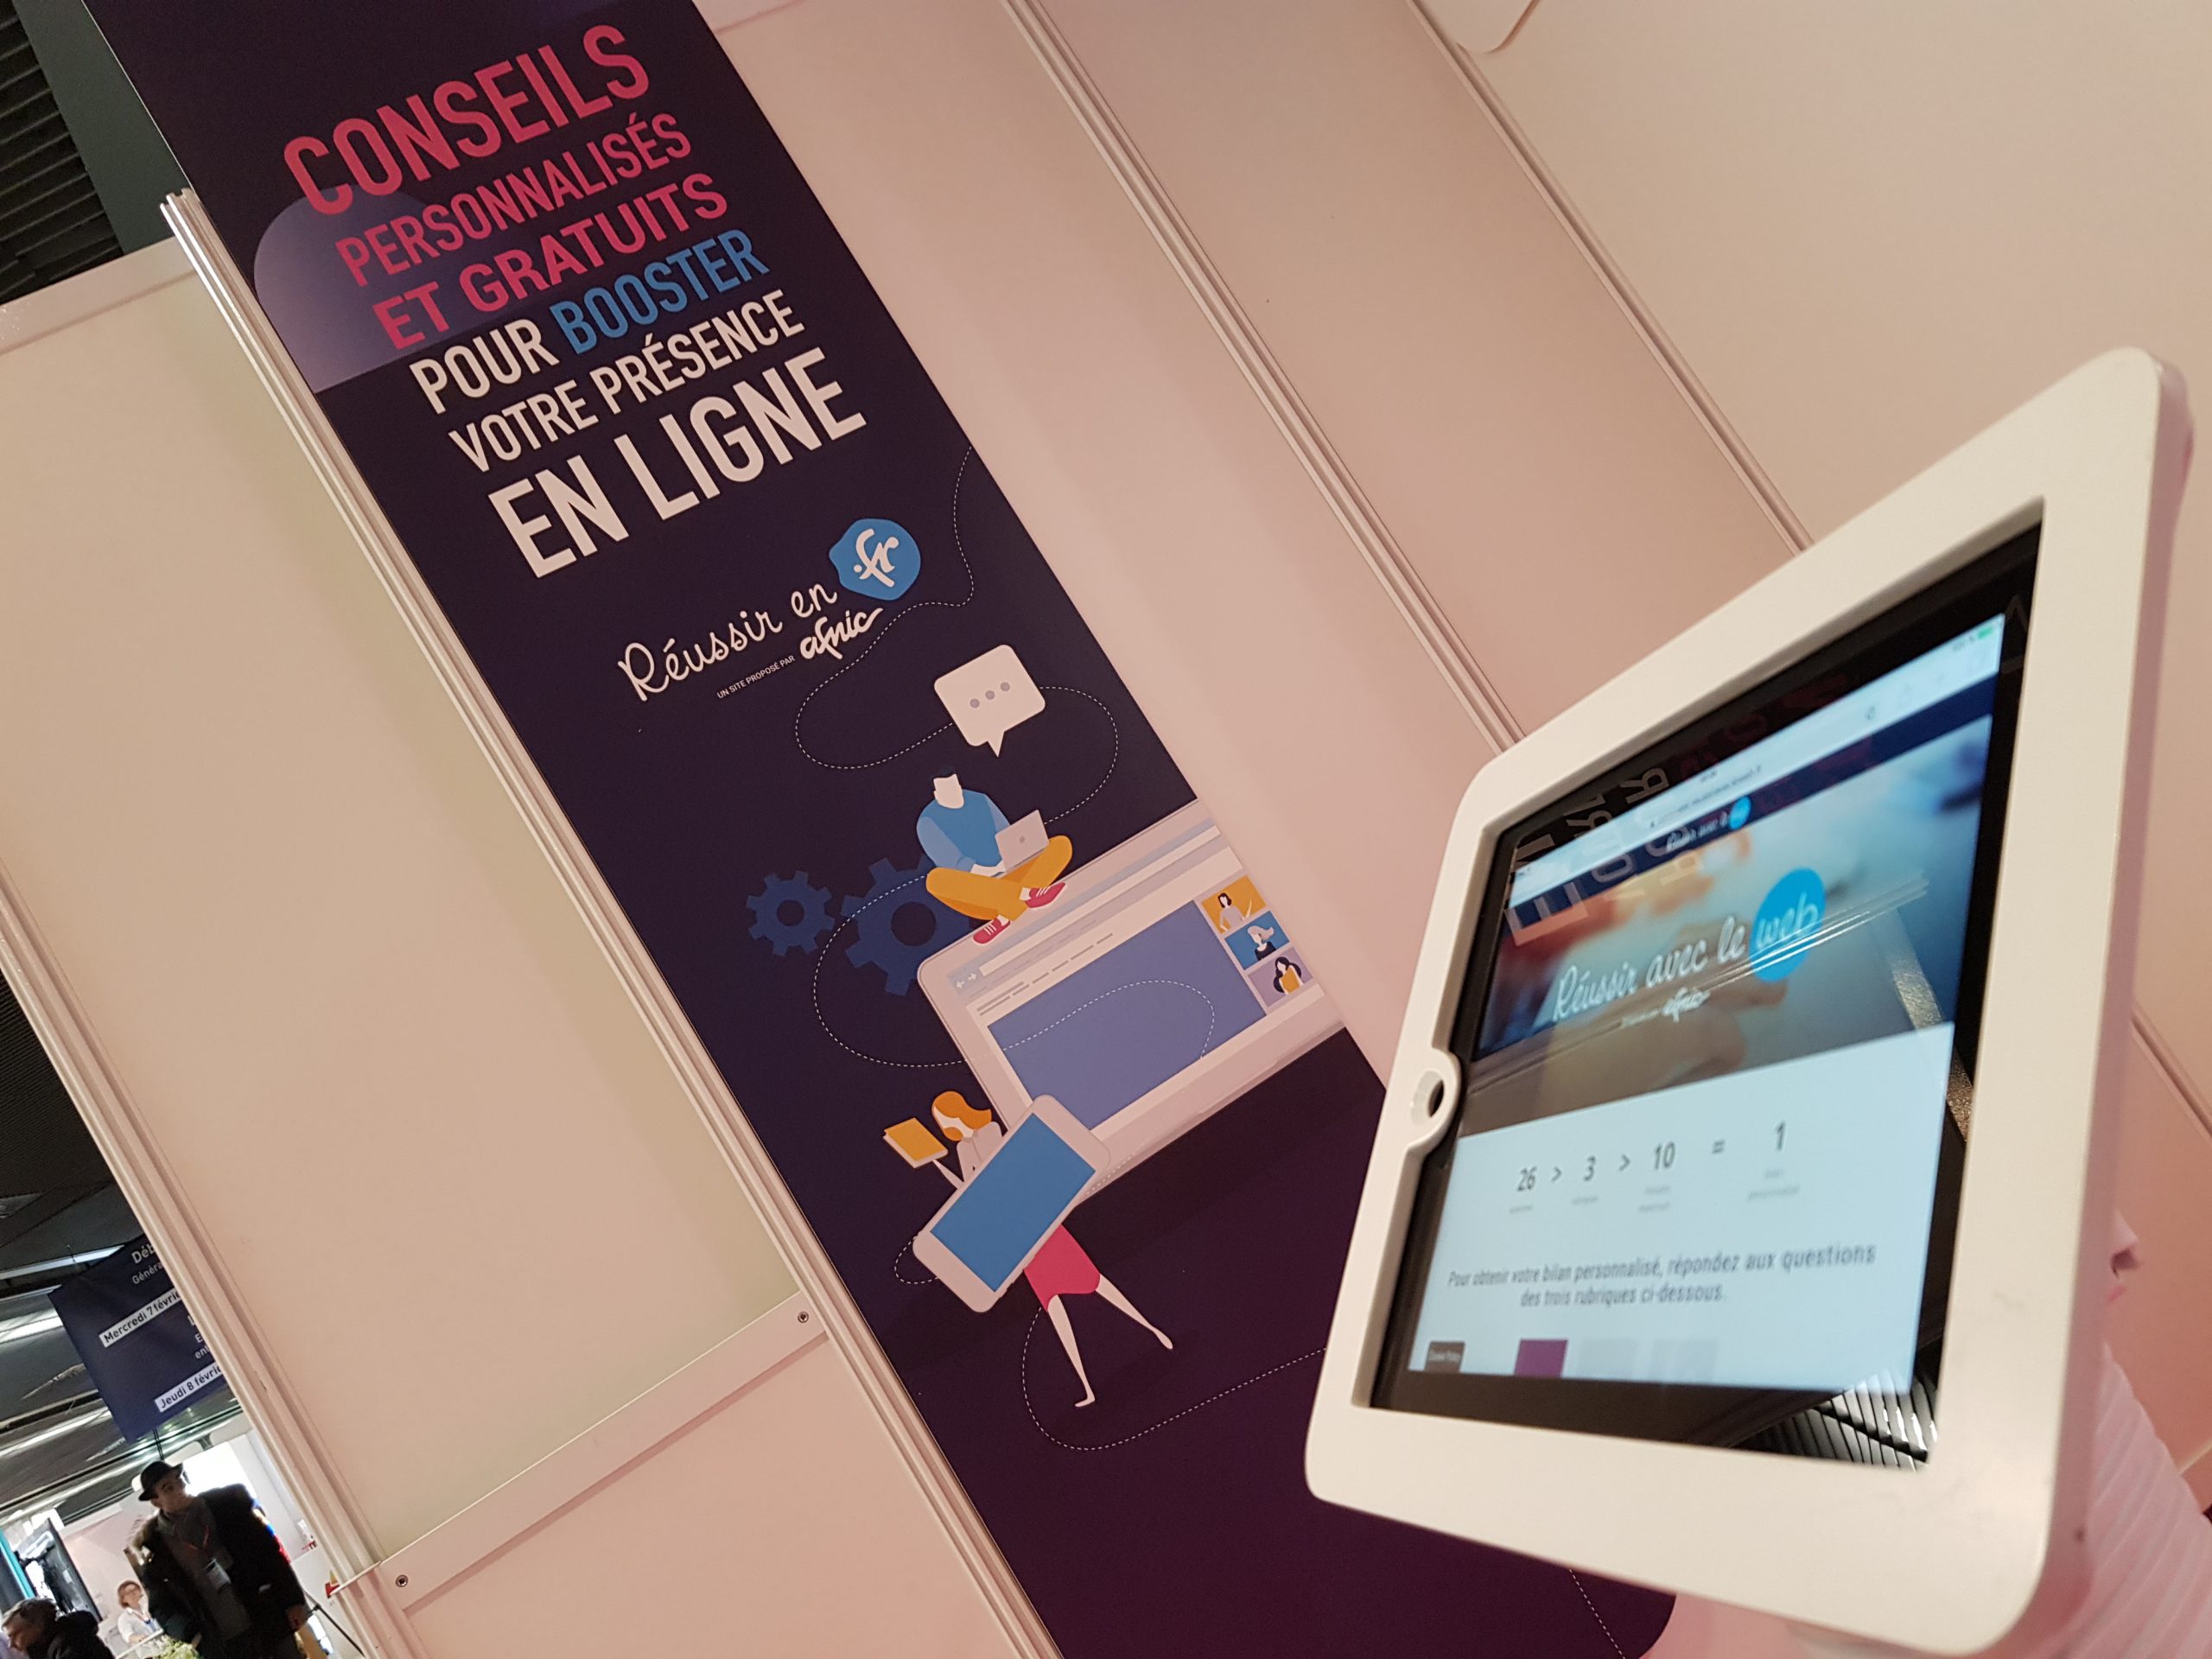 Dispositif “Réussir avec le web” au Salon des Entrepreneurs de Paris